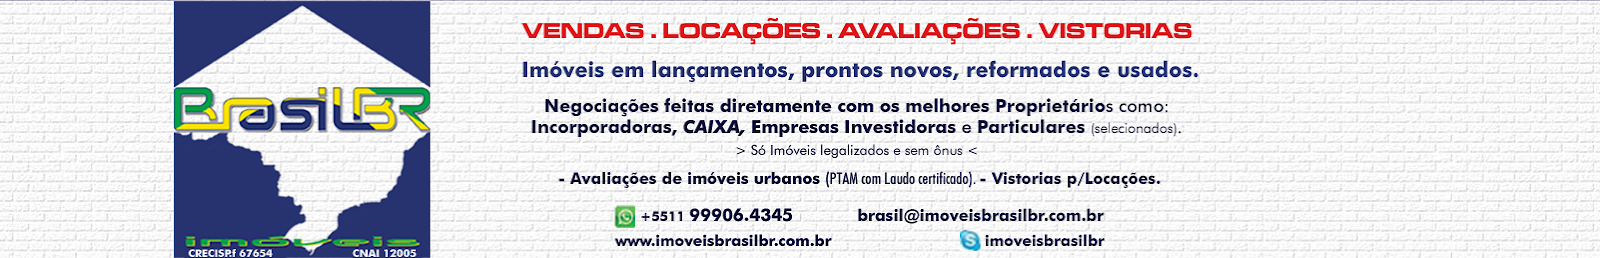 Imóveis BrasilBR - Imóveis Residenciais, Comerciais e Corporativos. Avaliações de Imóveis.